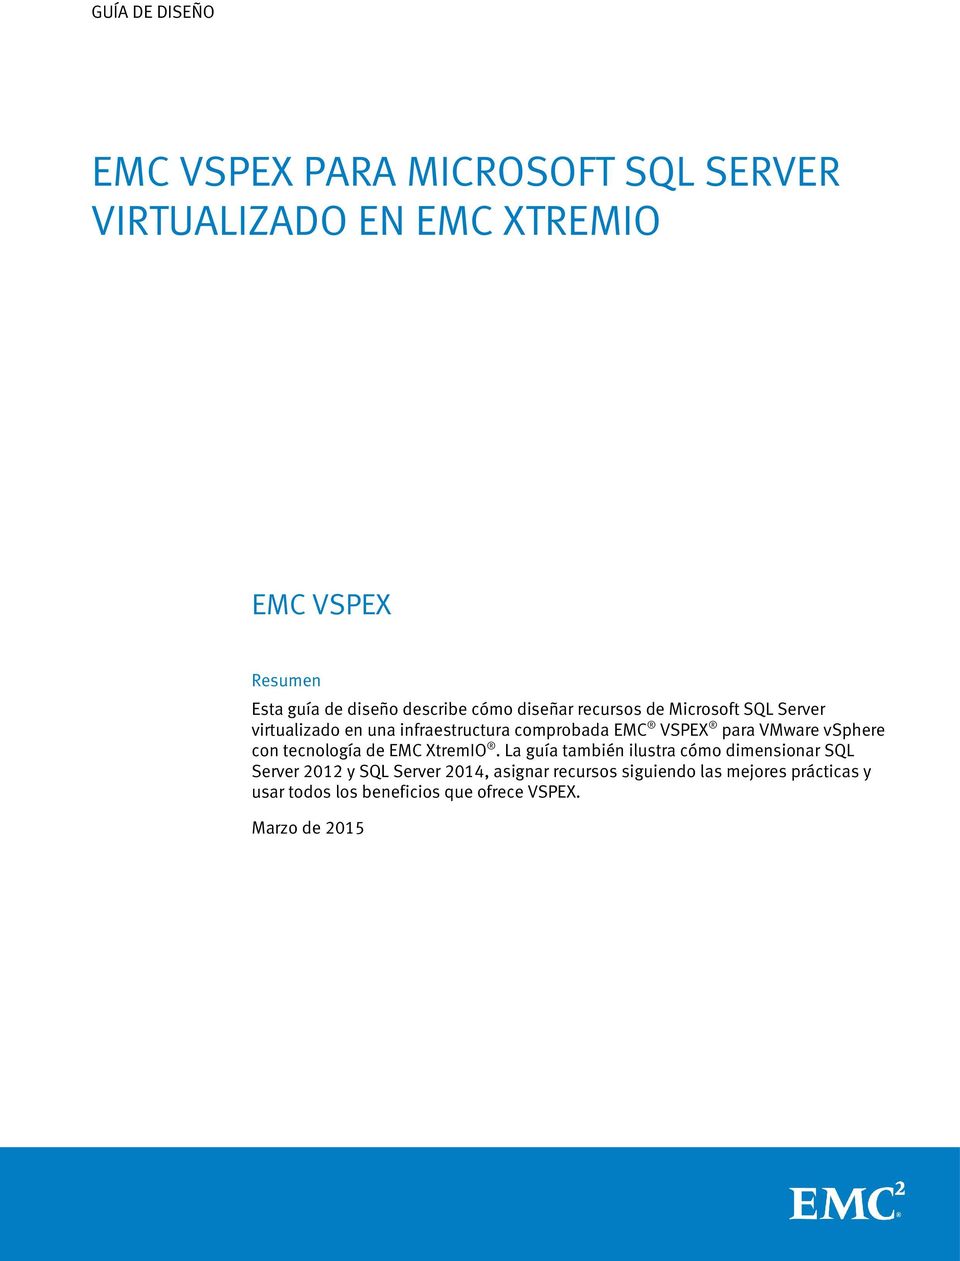 VSPEX para VMware vsphere con tecnología de EMC XtremIO.